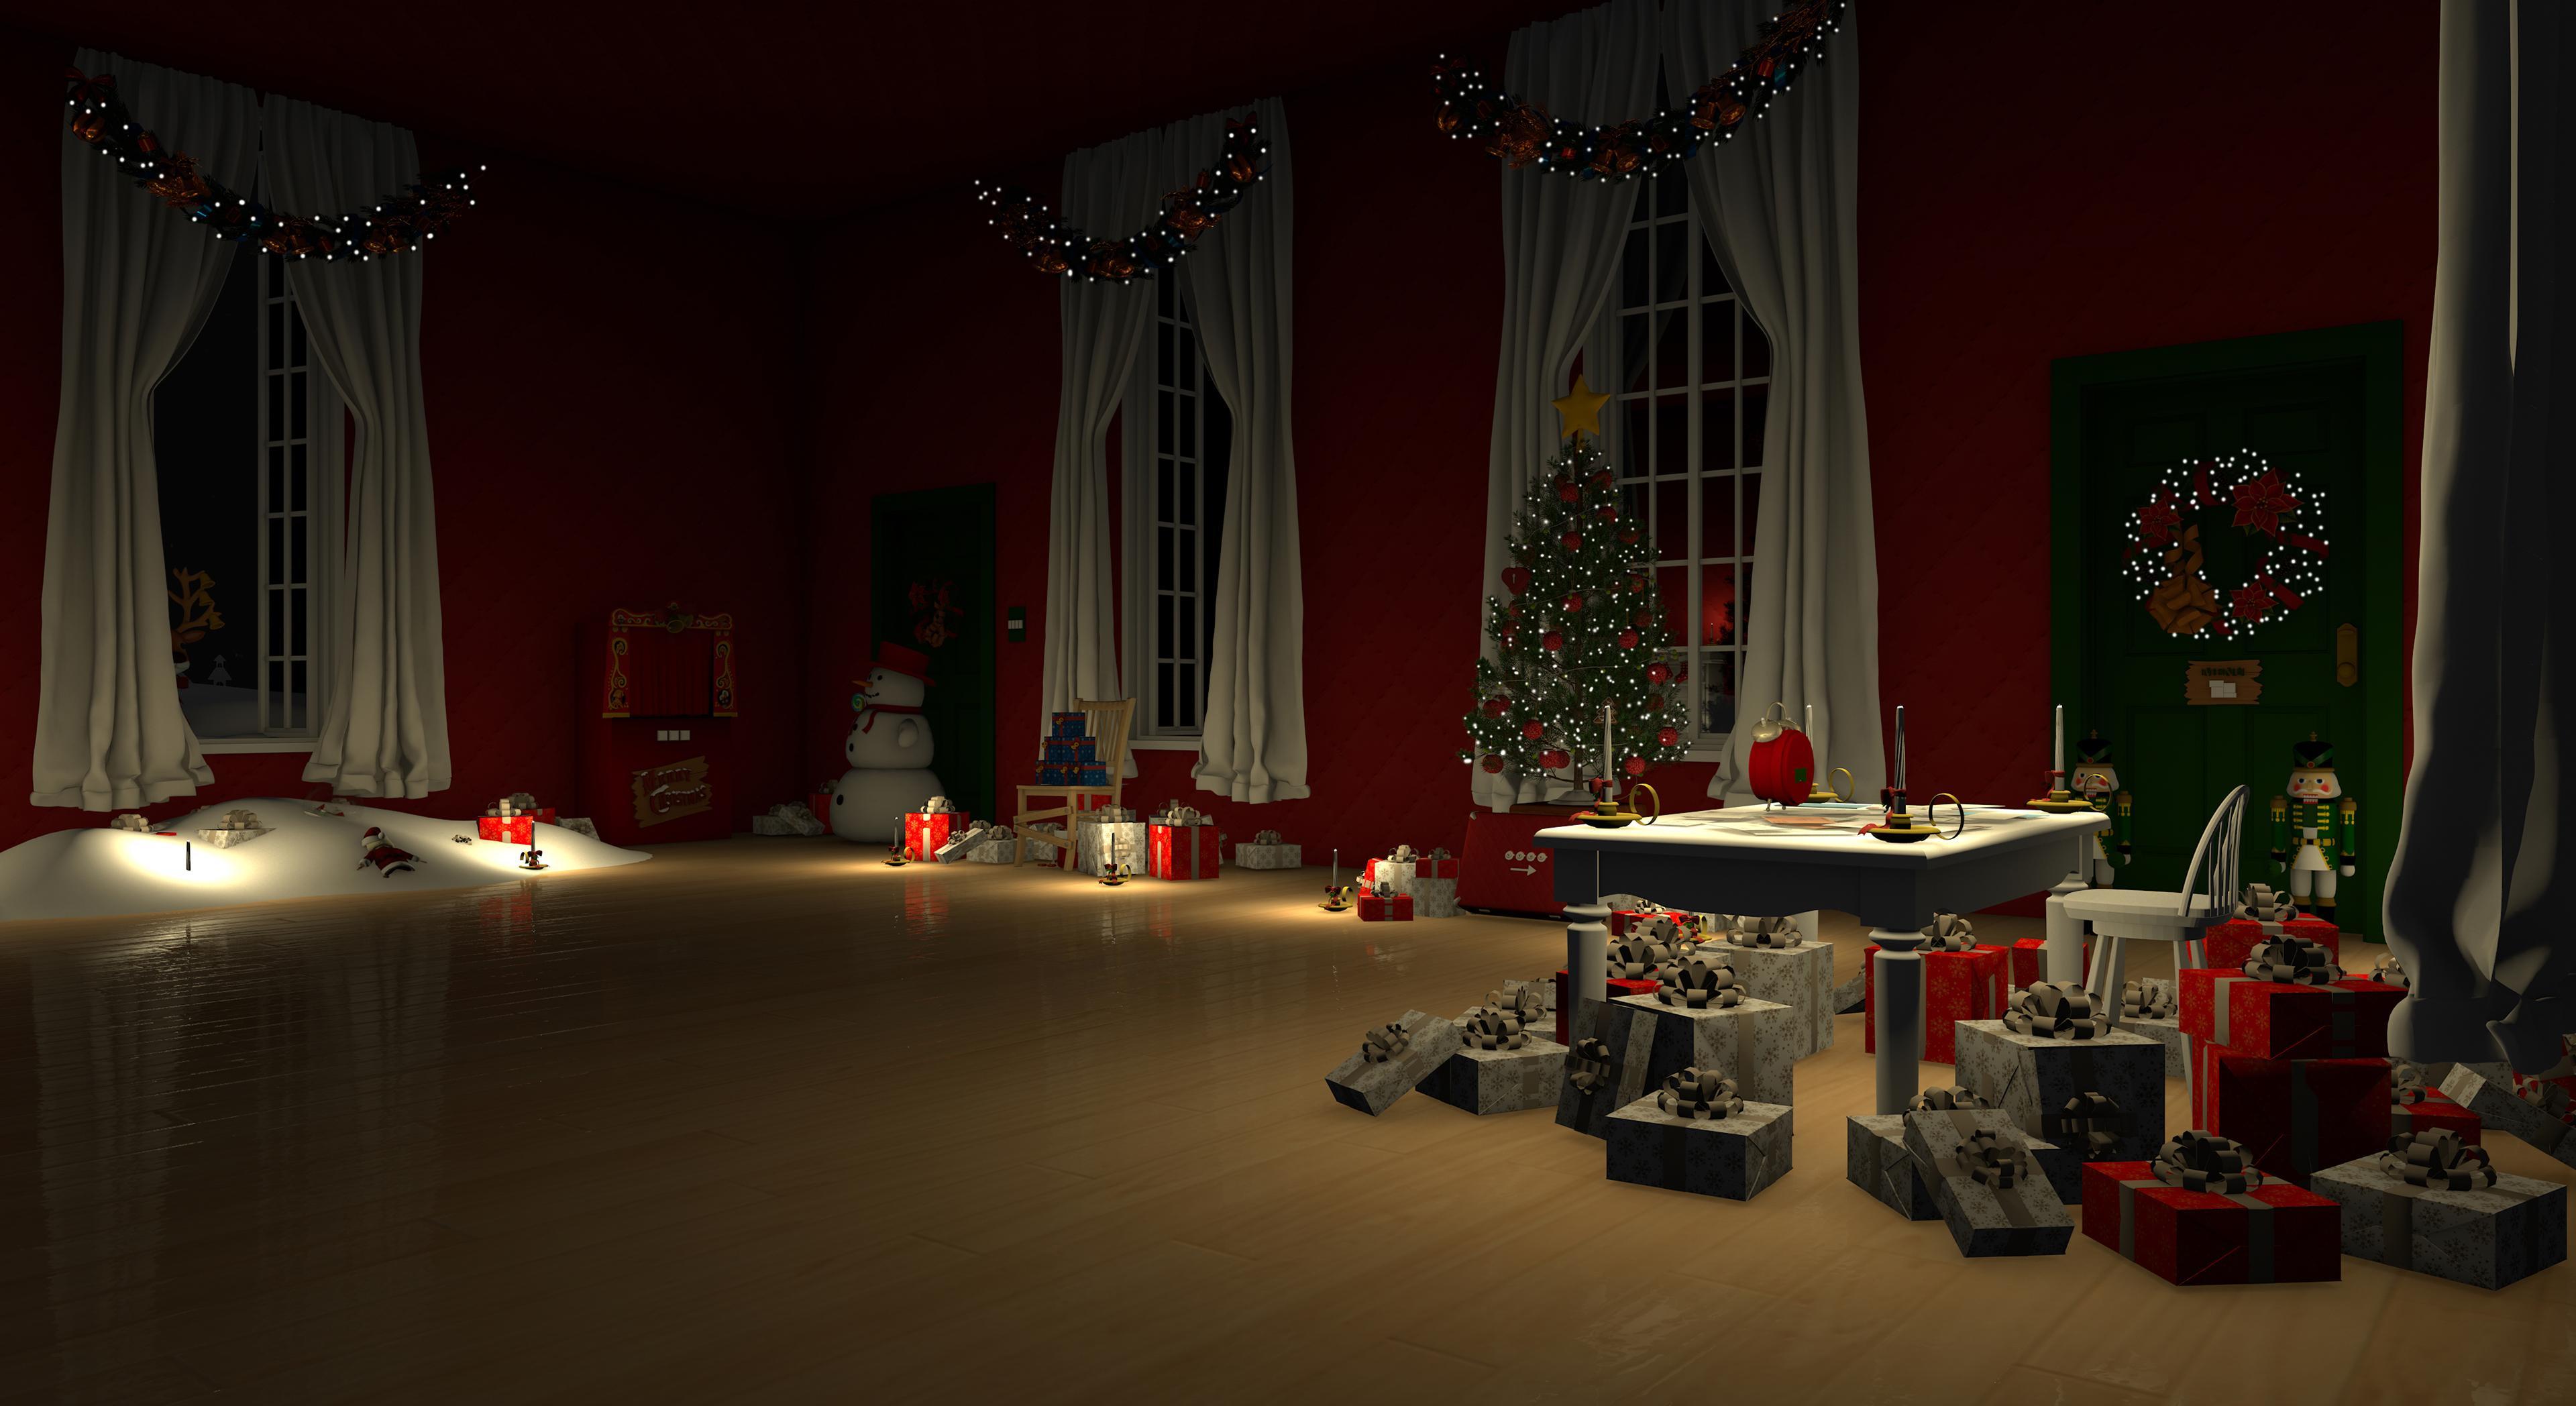 Screenshot 1 of Permainan Melarikan Diri: Selamat Hari Krismas 2.22.2.0